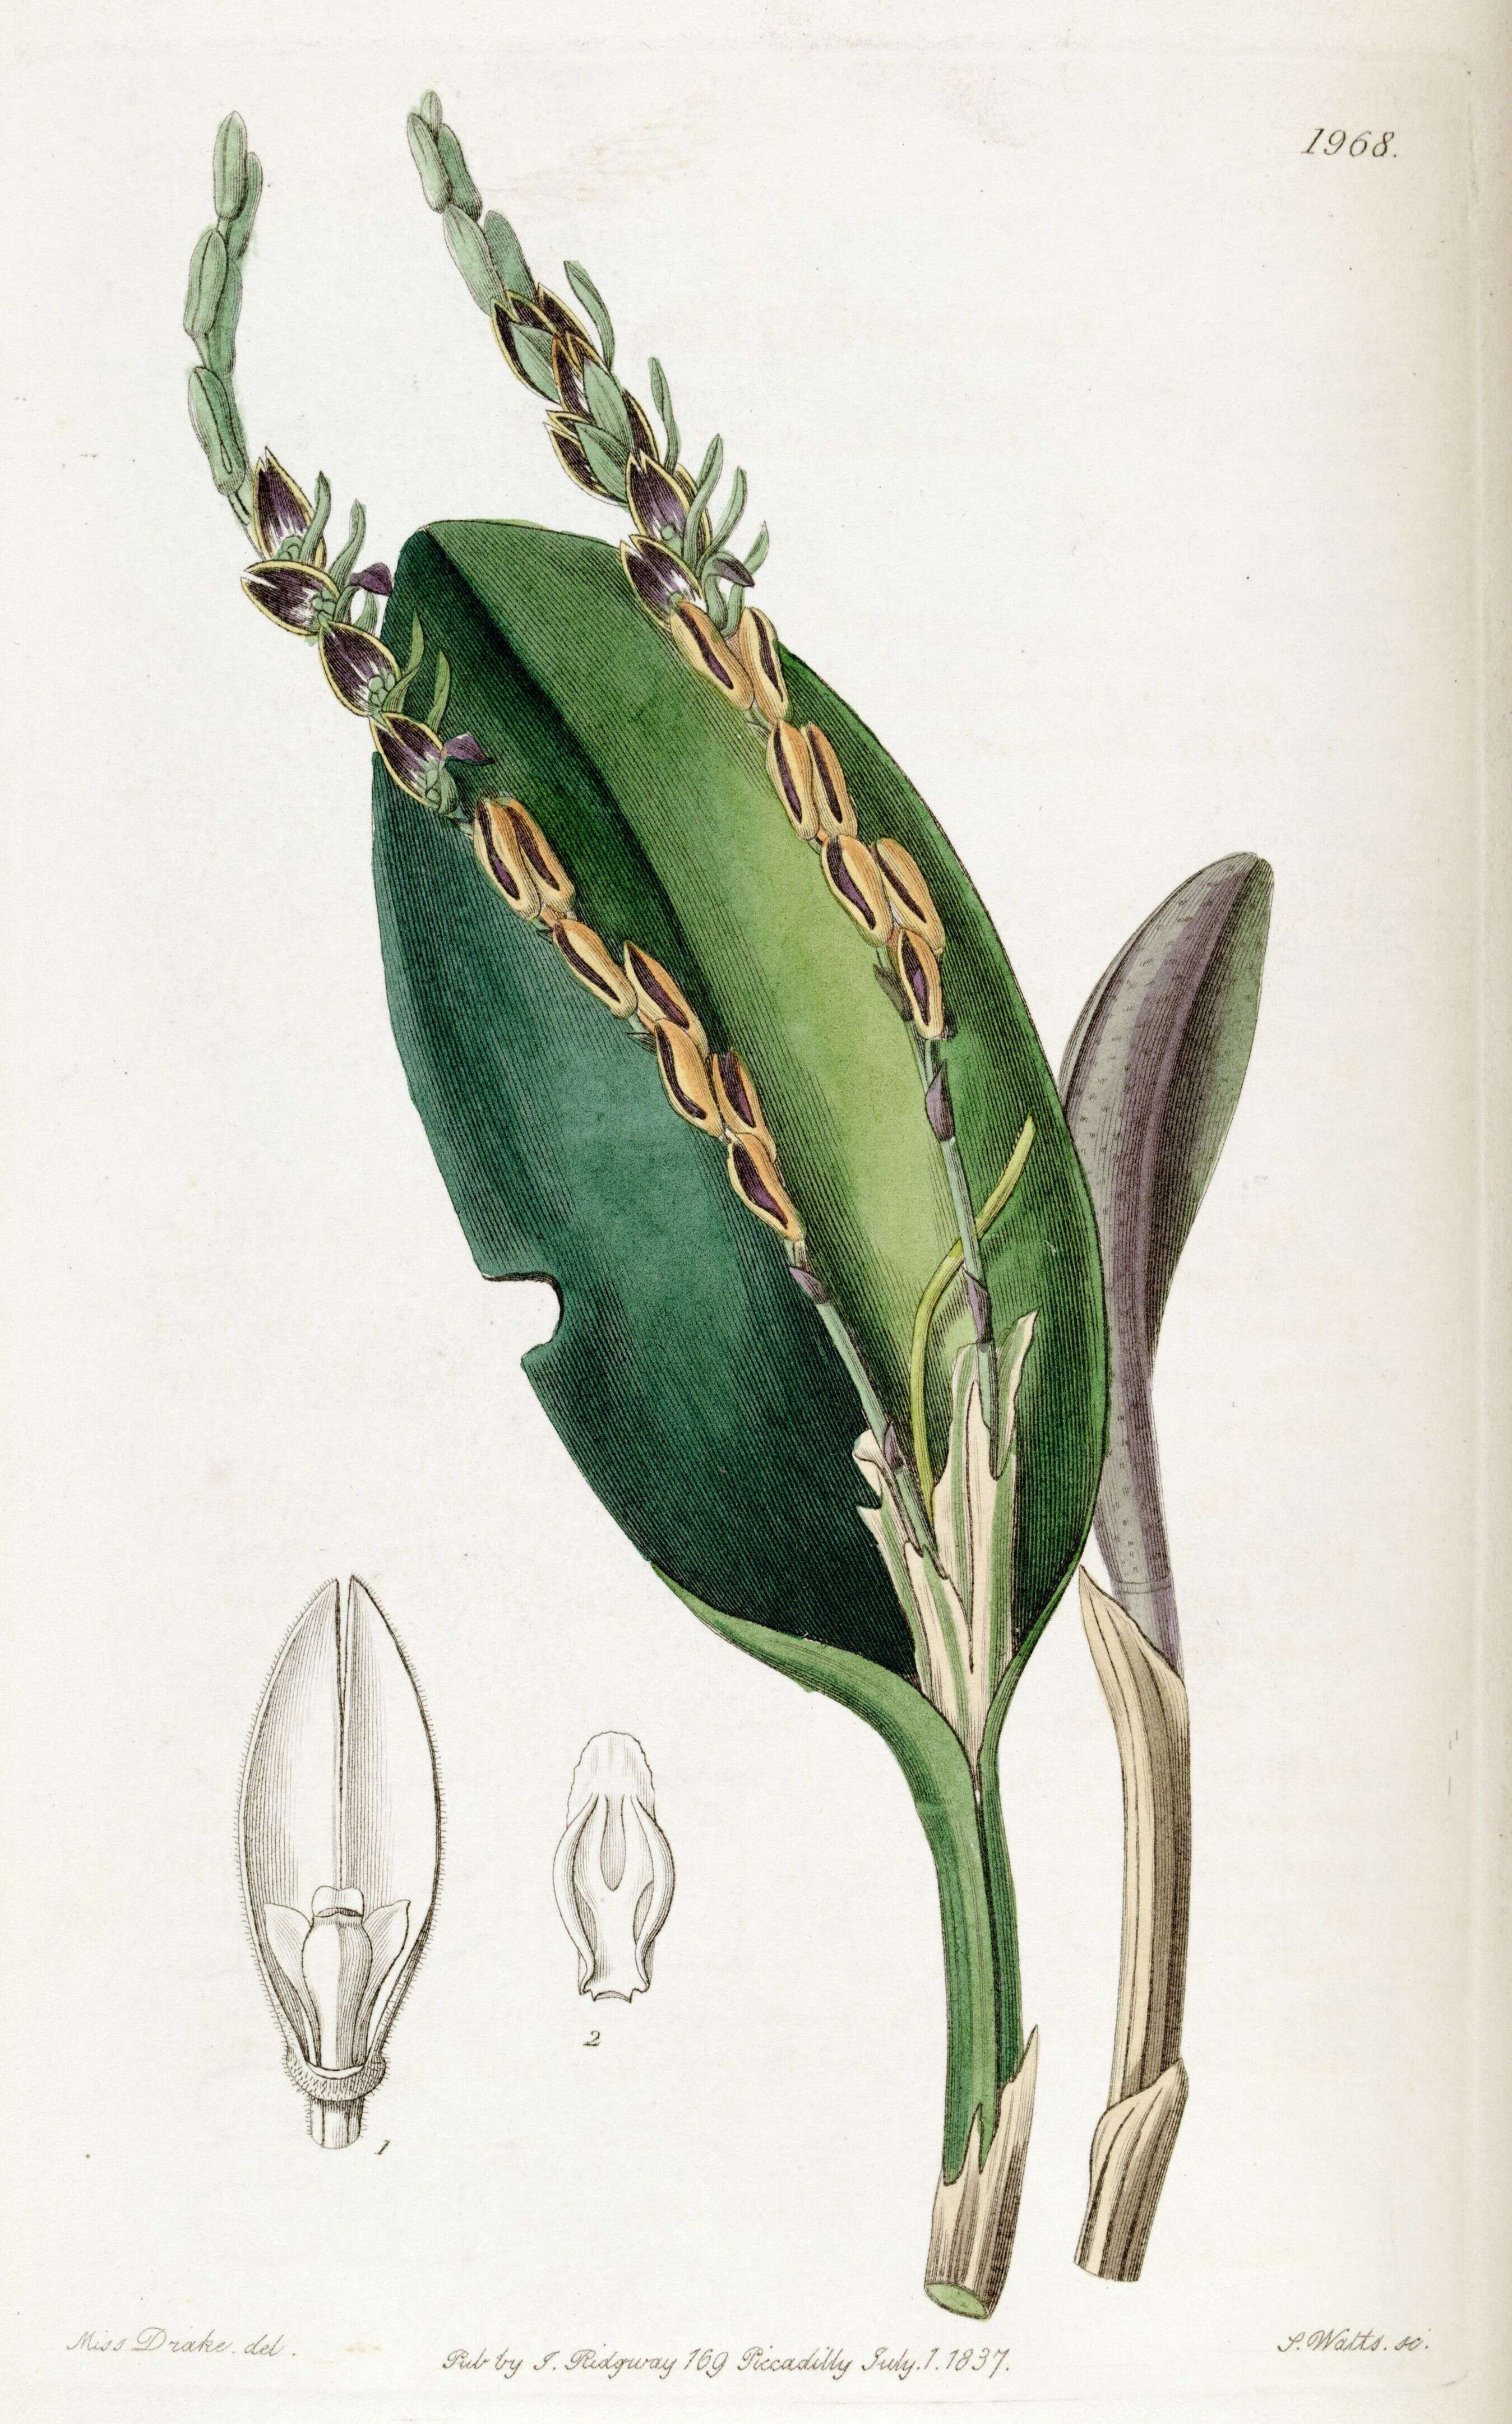 Image of Acianthera saurocephala (G. Lodd.) Pridgeon & M. W. Chase